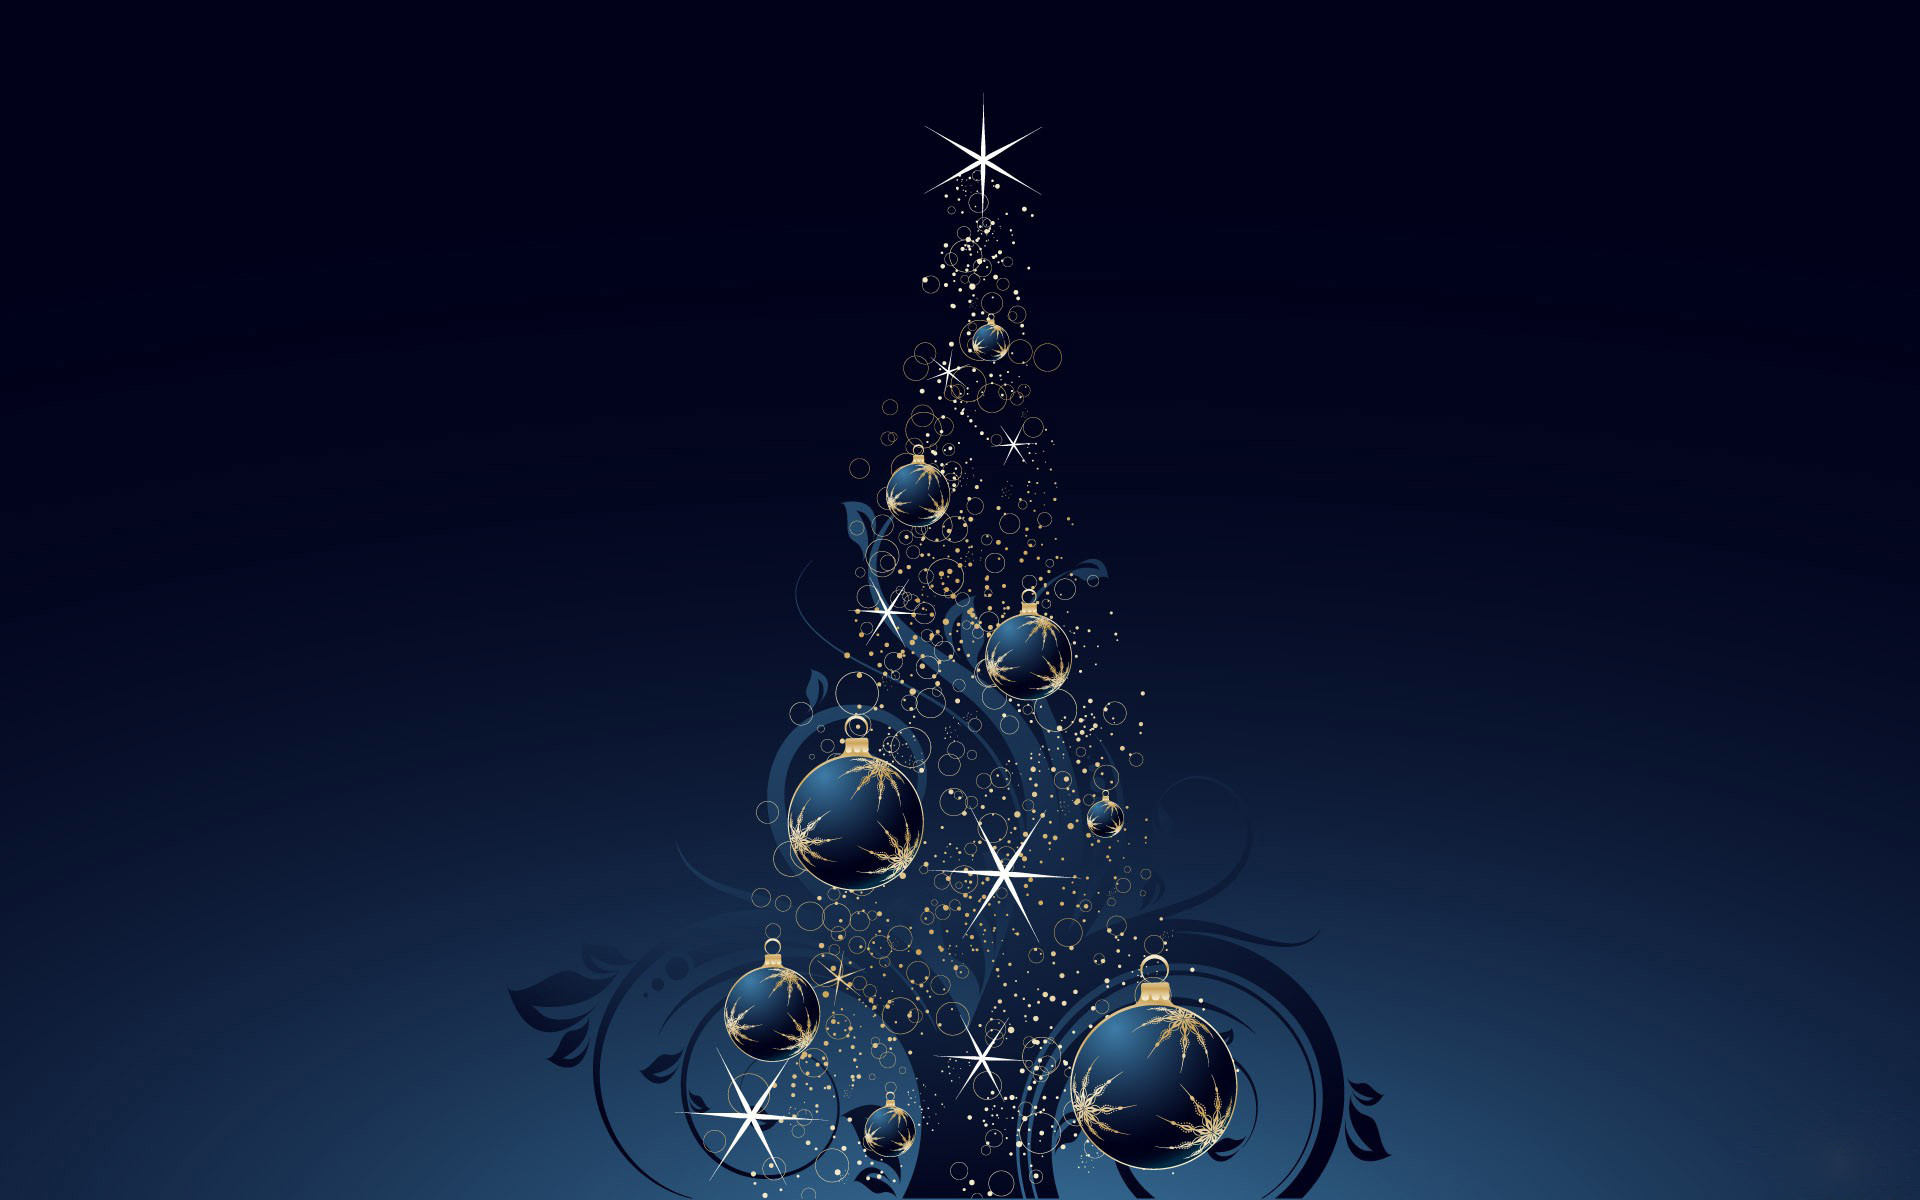 Hãy đưa tinh thần Giáng Sinh đến trên màn hình desktop của bạn với bức ảnh nền Christmas Tree Windows 7 đầy màu sắc. Xem ảnh để cảm nhận không khí ấm áp và thật náo nhiệt của đêm Giáng Sinh.